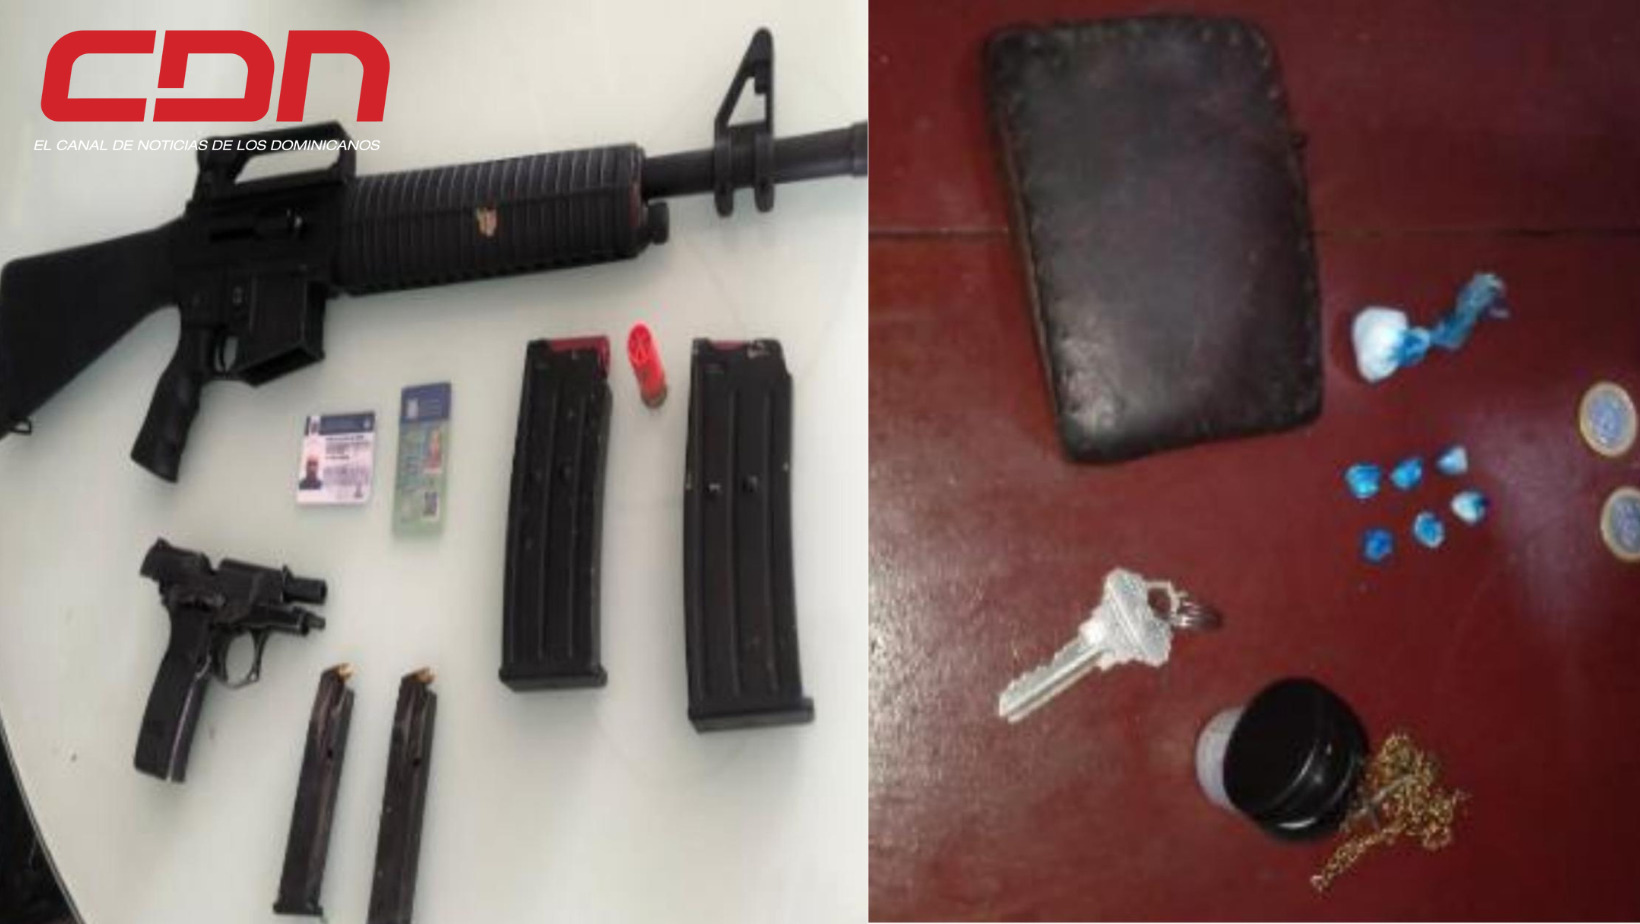 Armas y drogas ocupadas en operativo realizados por miembros de la Policía Nacional. Foto CDN Digital